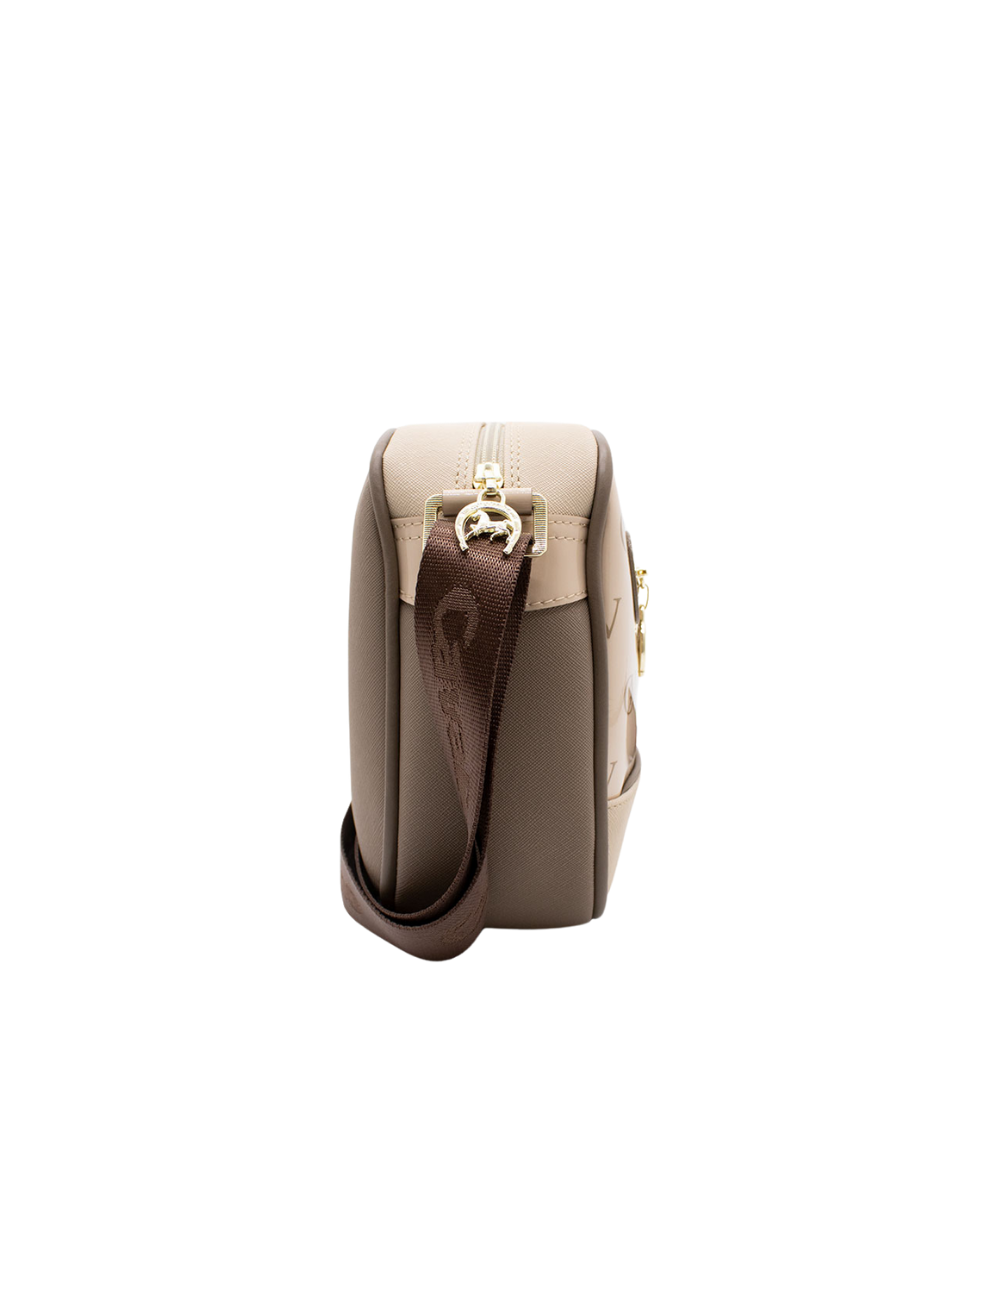 Cavalinho Signature Crossbody Bag SKU 18740190.31 #color_sand / beige